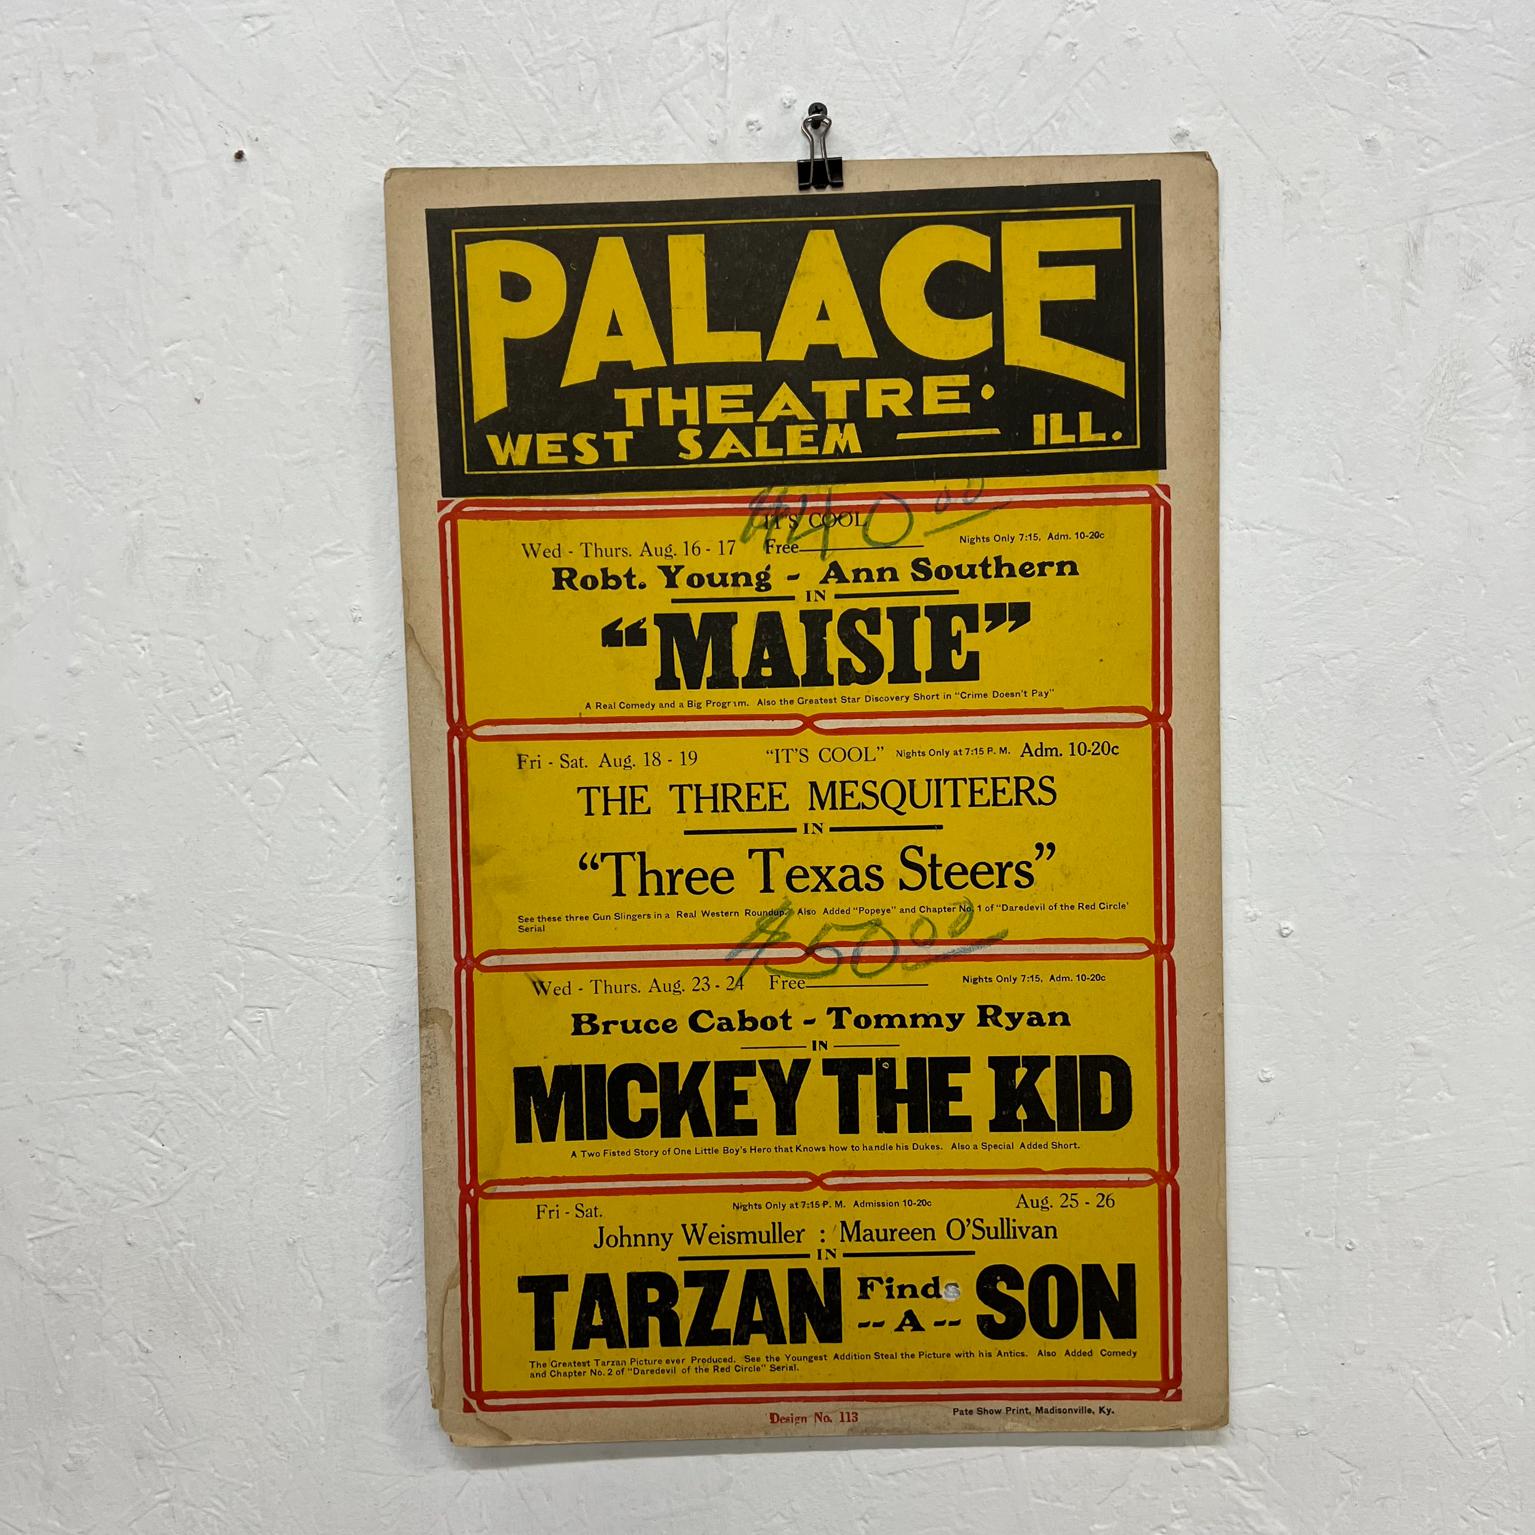 Old Palace Theatre Filmplakat Maisie Tarzan und mehr West Salem IL 
Eintritt 10 Cent!
14 x 22
Gebrauchter ausgefranster unrestaurierter Vintage-Zustand
Siehe Bilder.